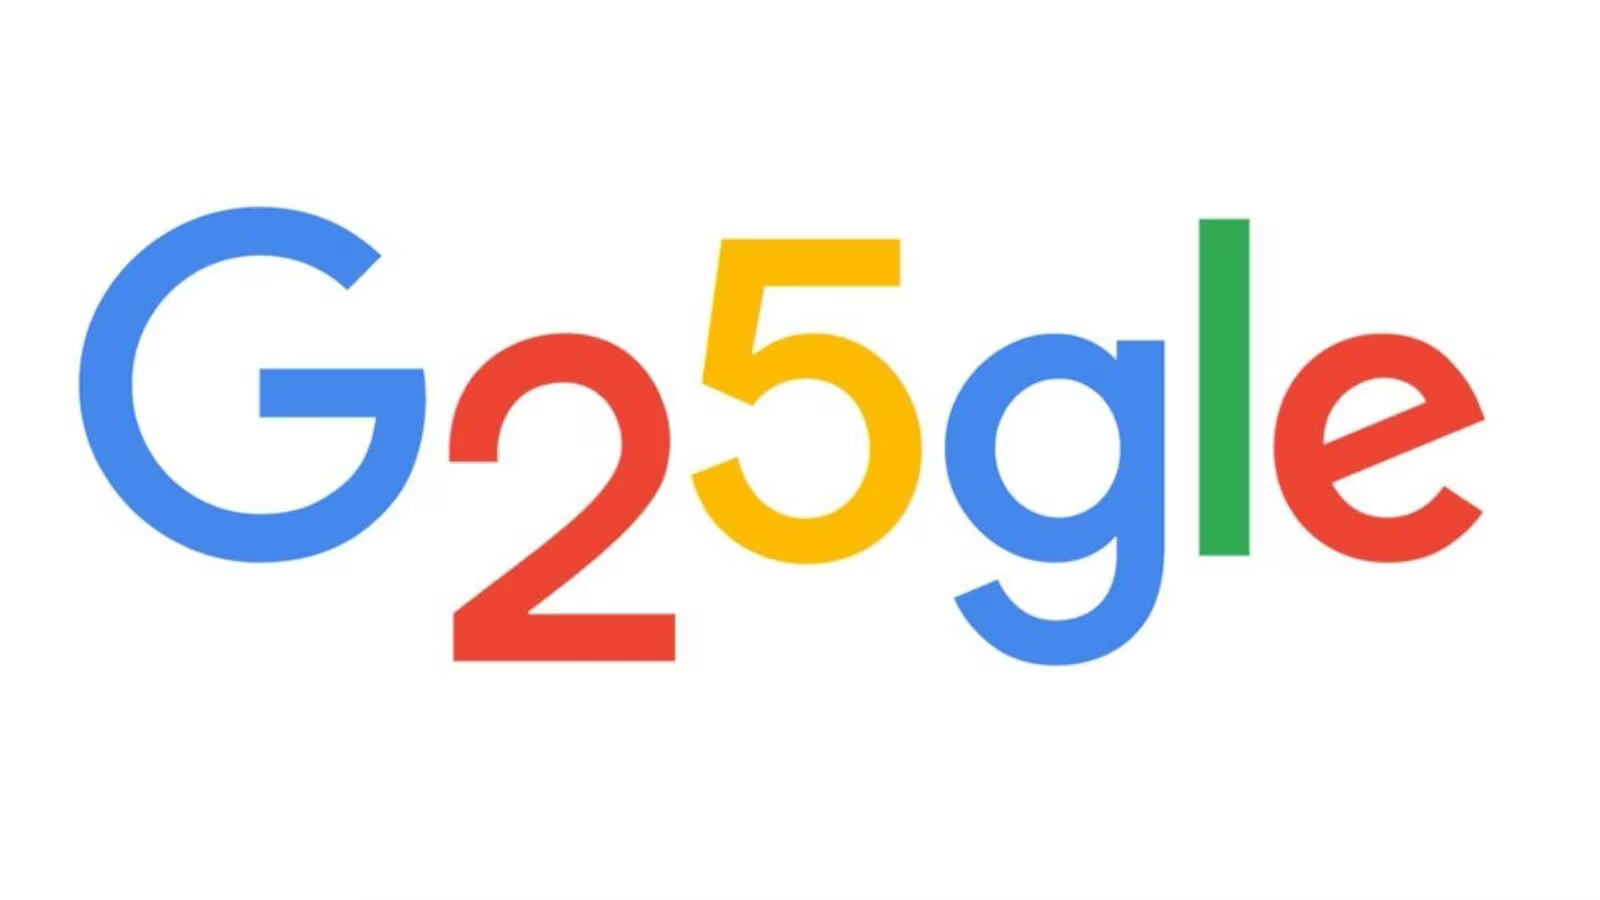 Google 25 Years